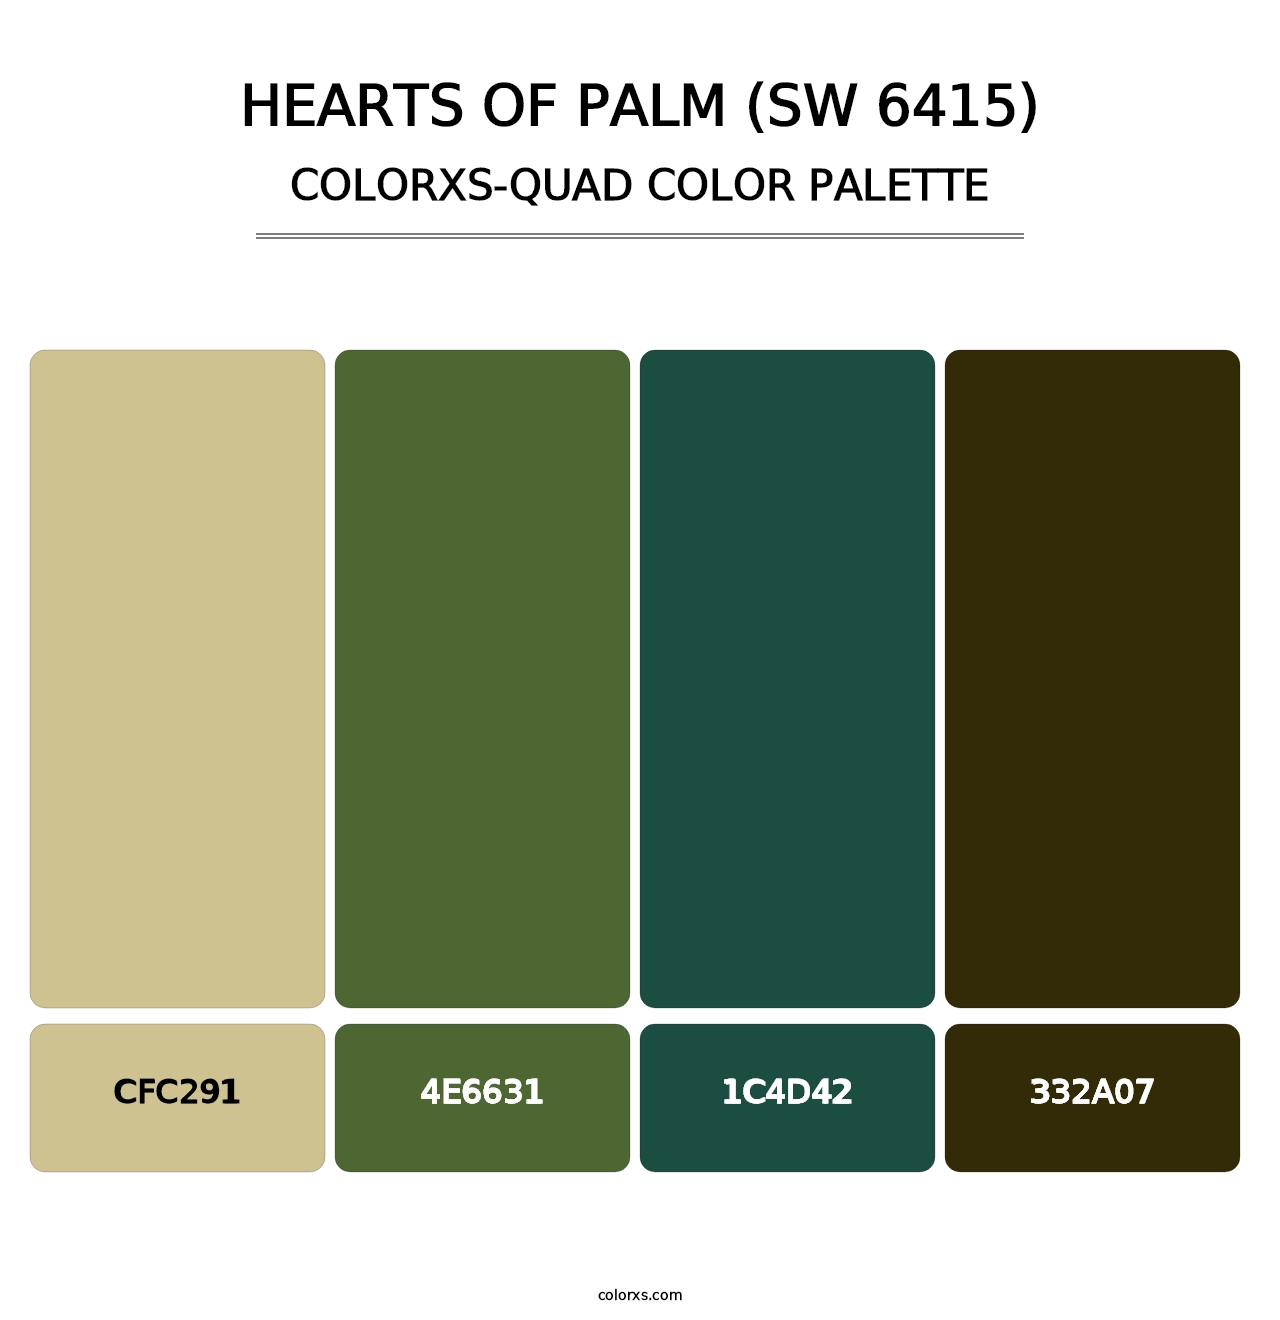 Hearts of Palm (SW 6415) - Colorxs Quad Palette